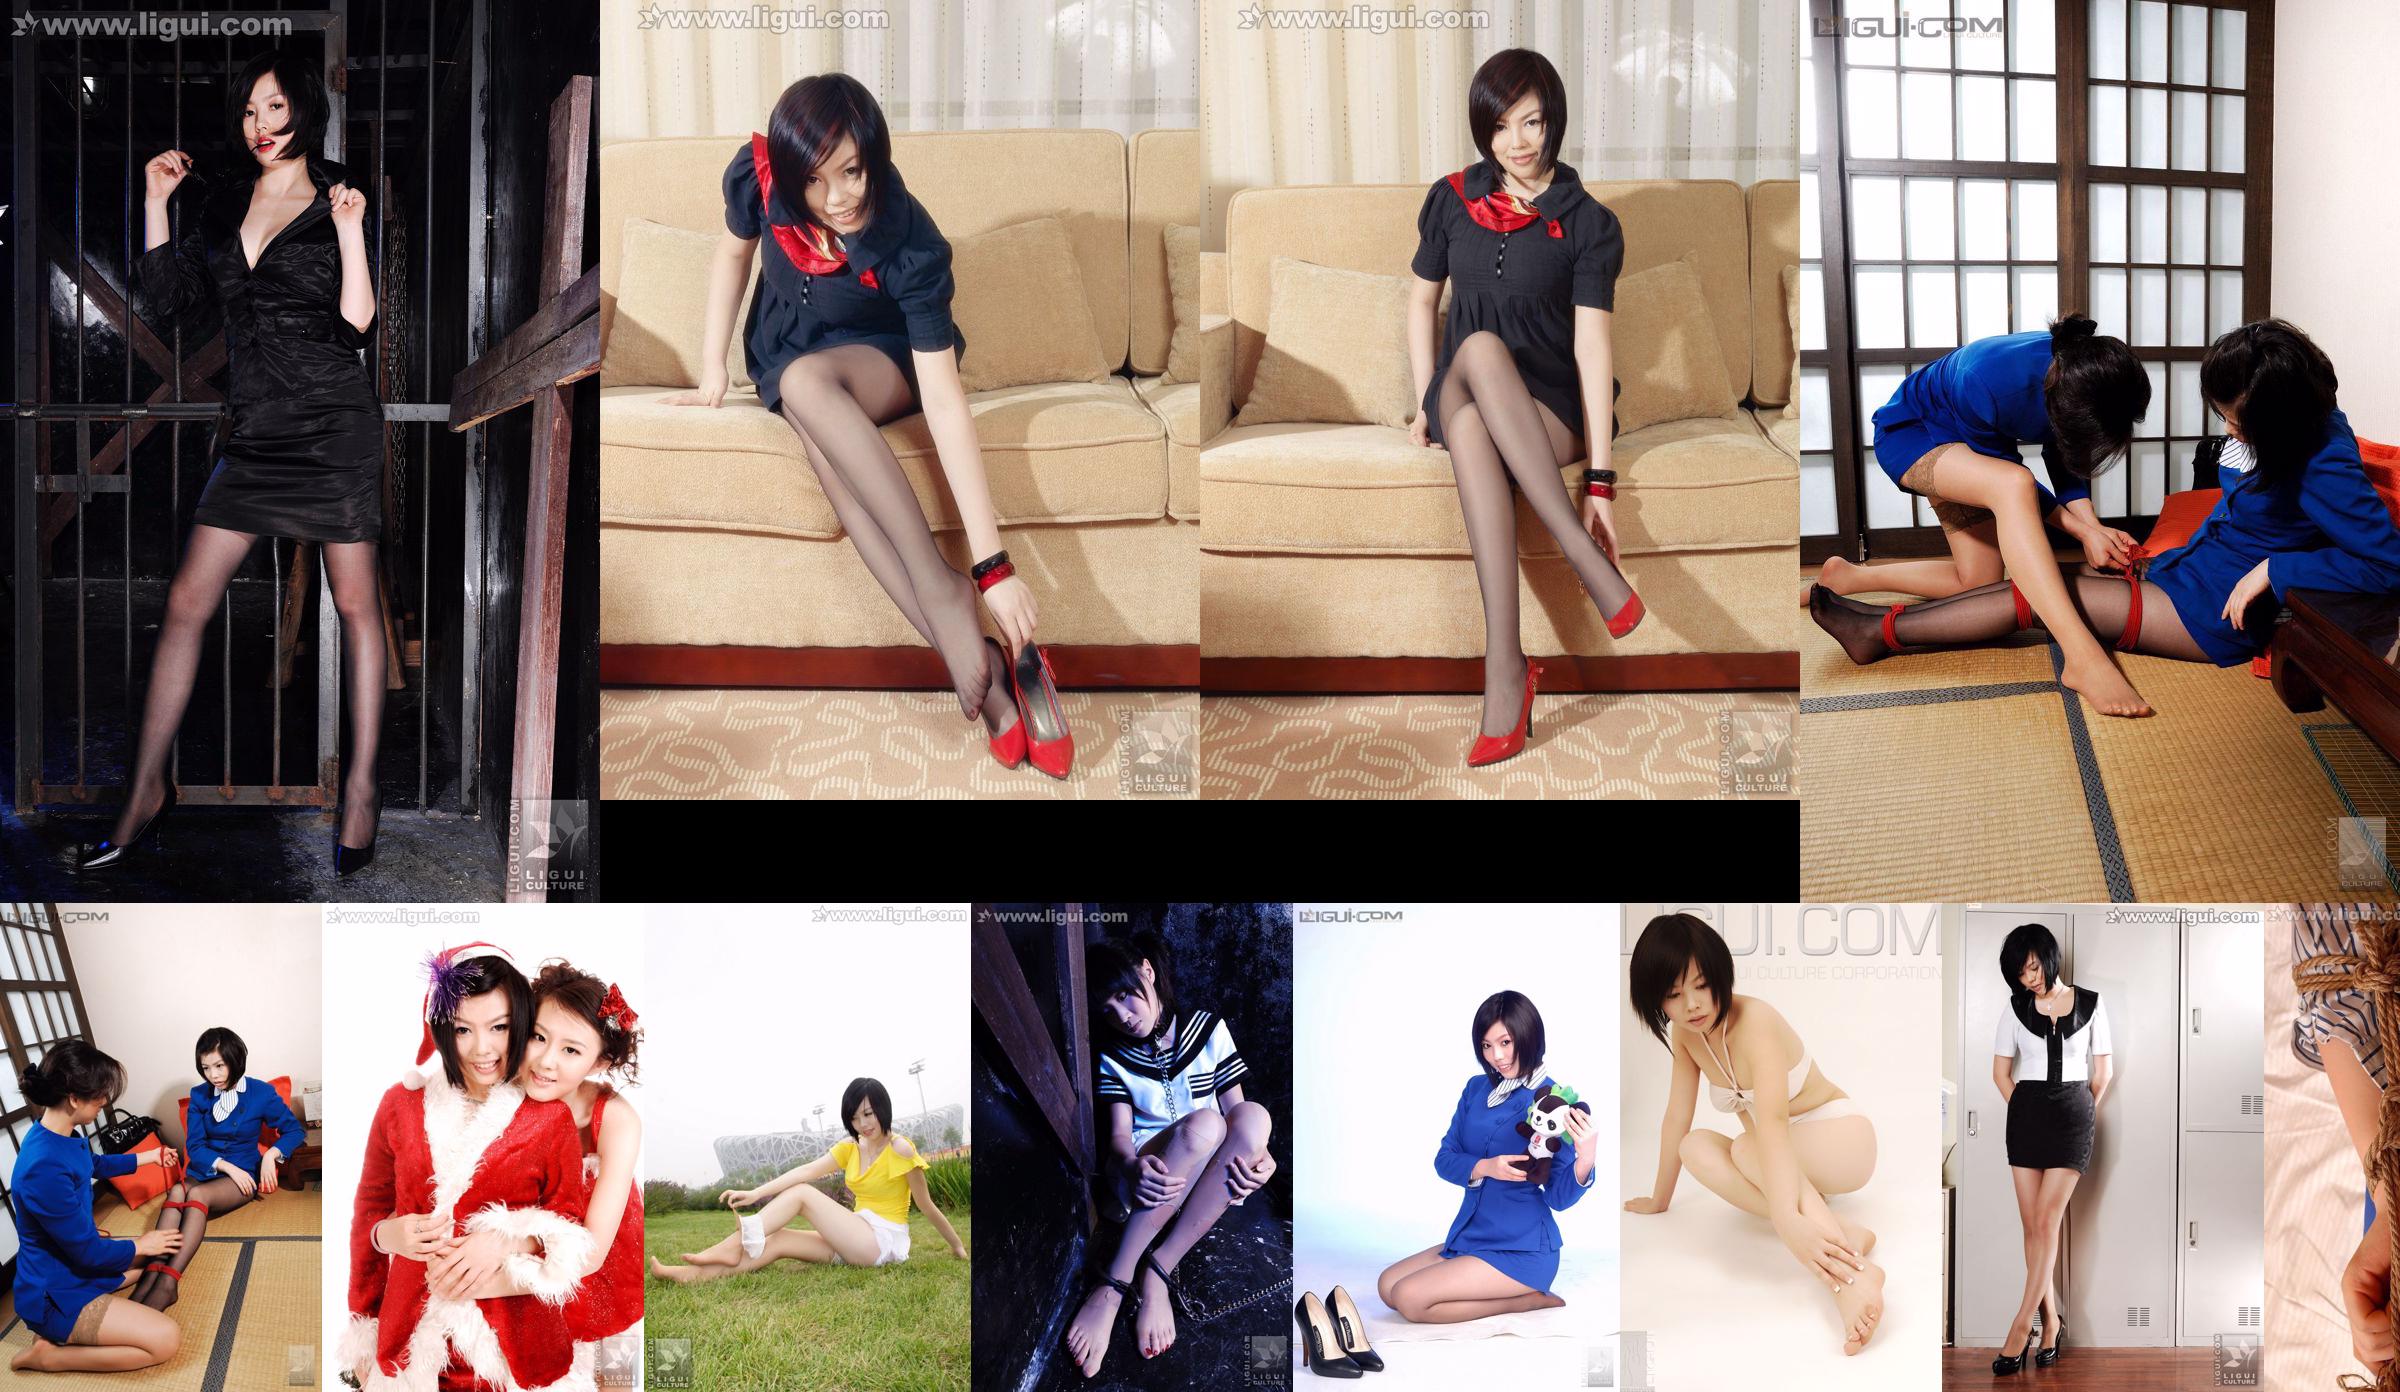 Người mẫu Muzi "Trưng bày đẹp về thời trang công sở cổ trắng" [丽 柜 LiGui] Ảnh chân dài ngọc nữ No.b61926 Trang 1